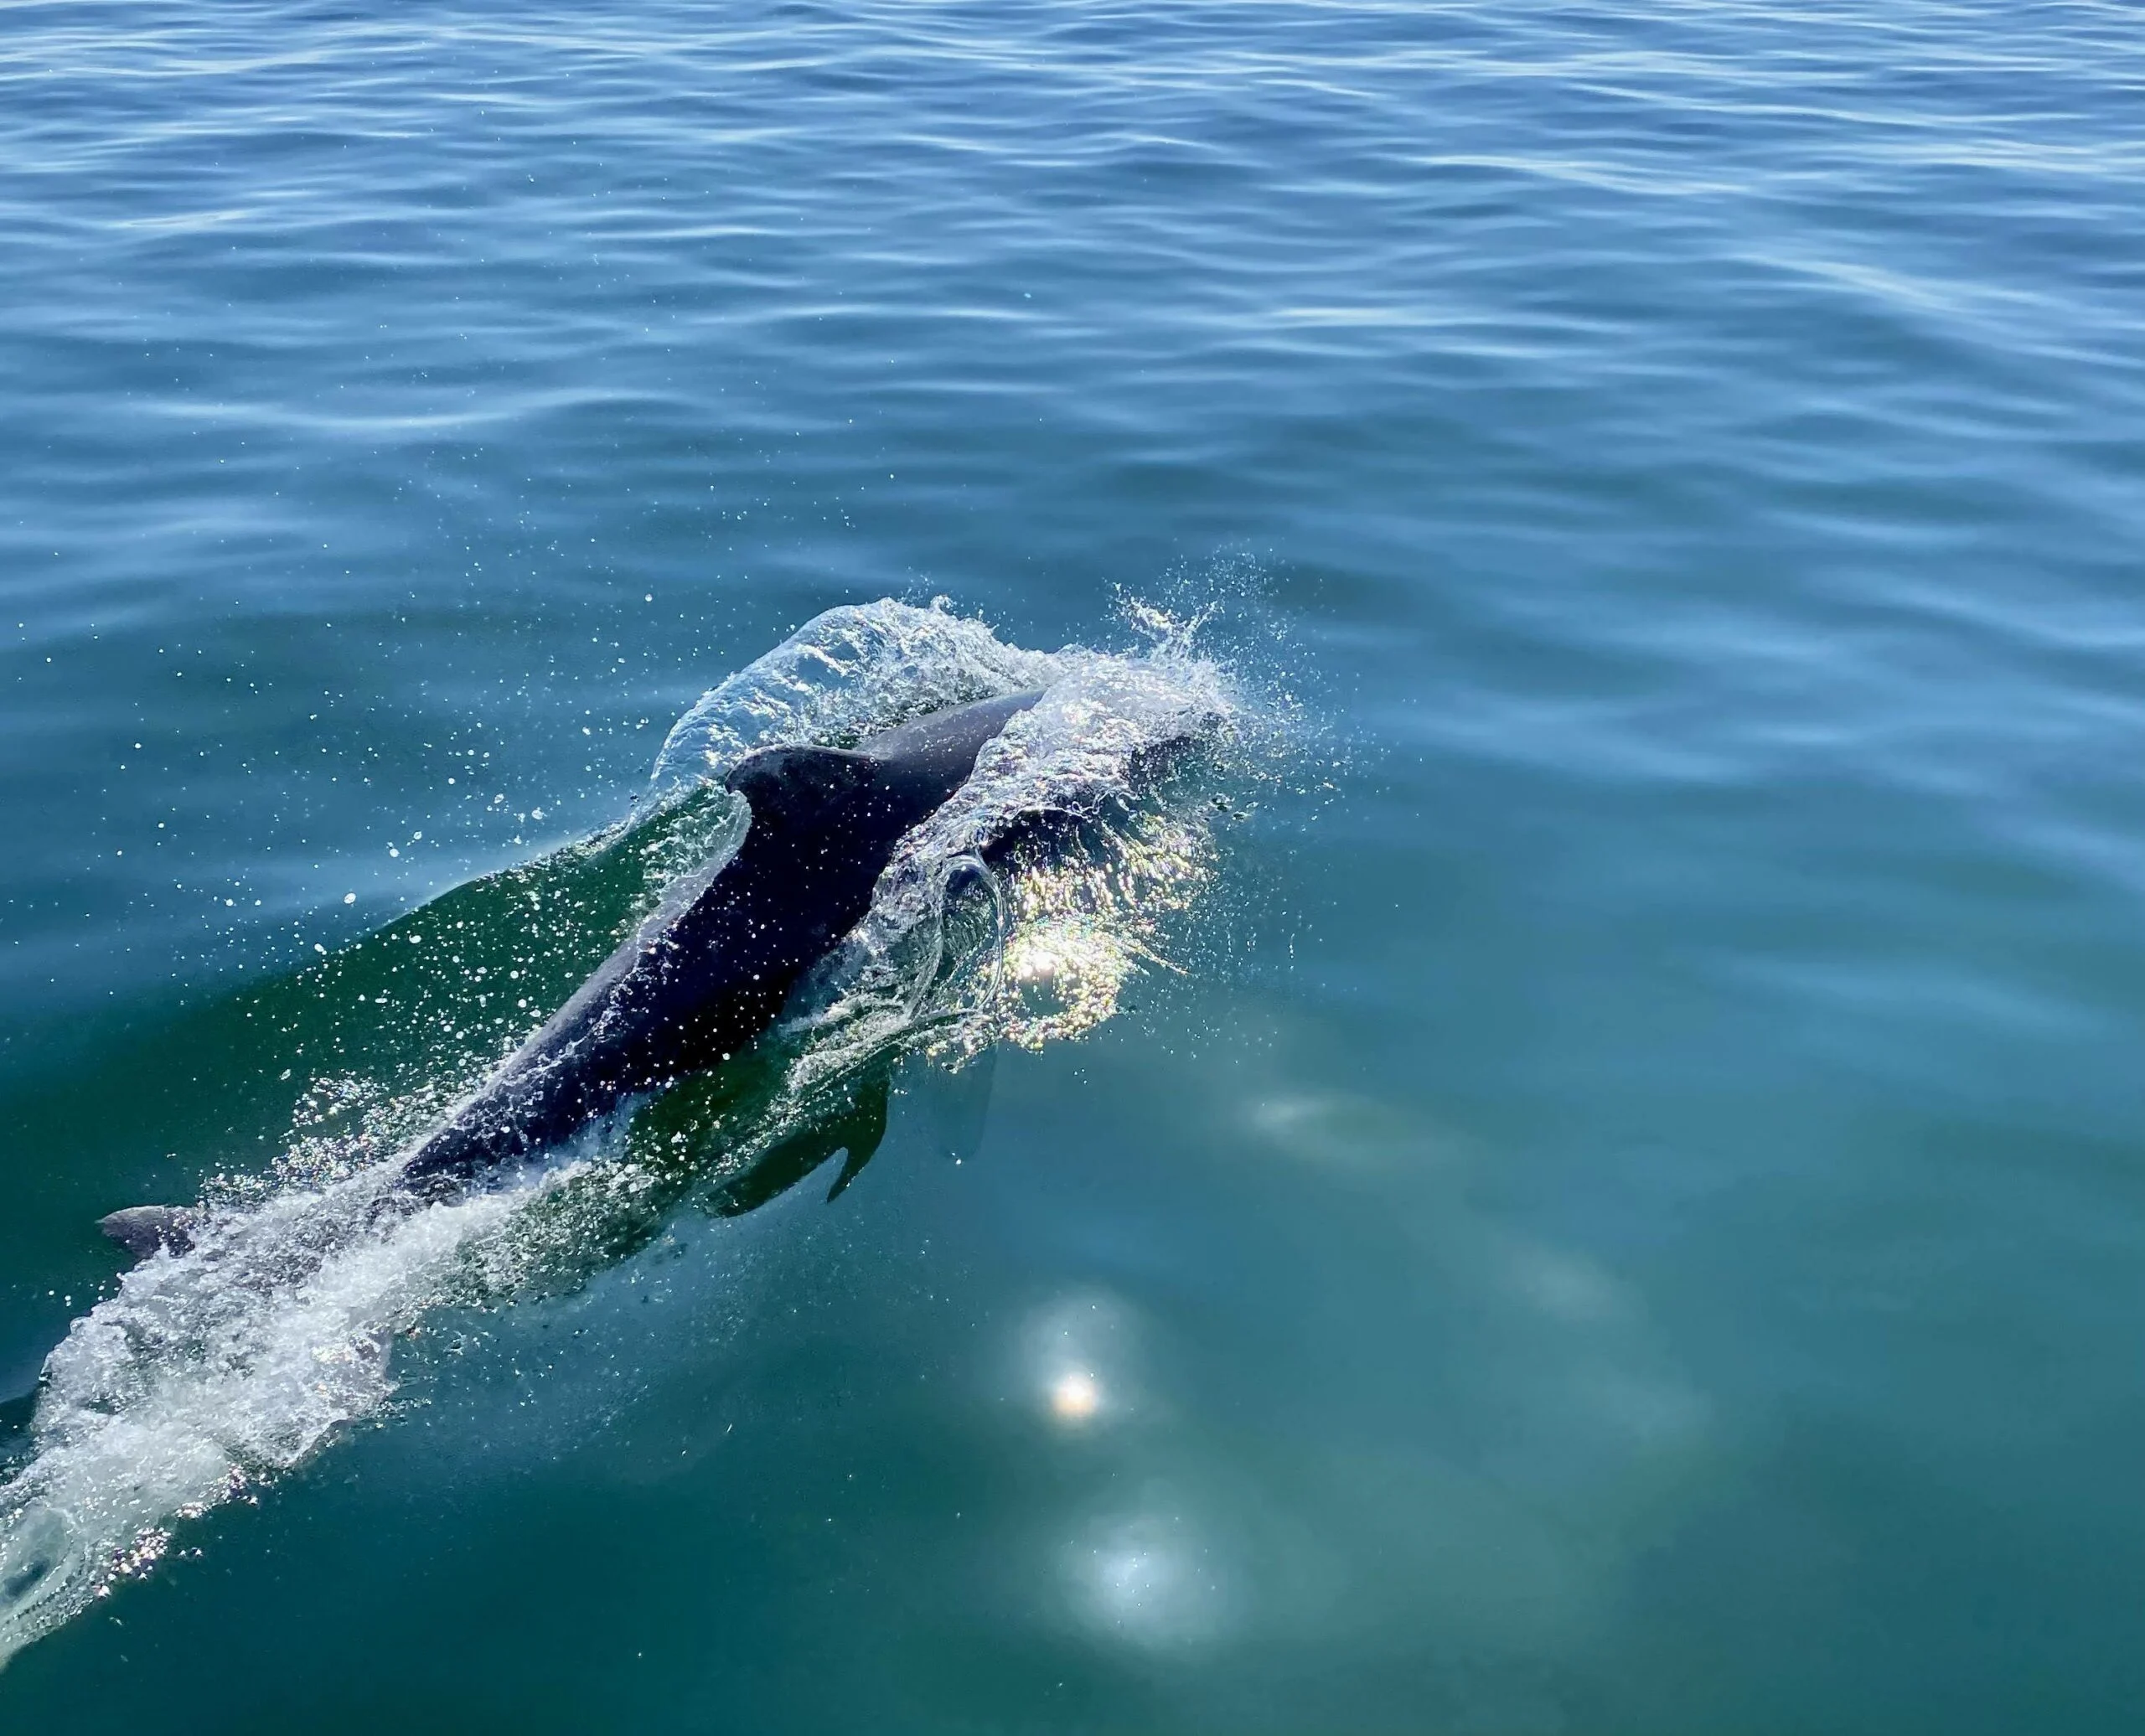 מפגש מרגש עם דולפין. צילום: אבנית (ניתי) סטרולוב